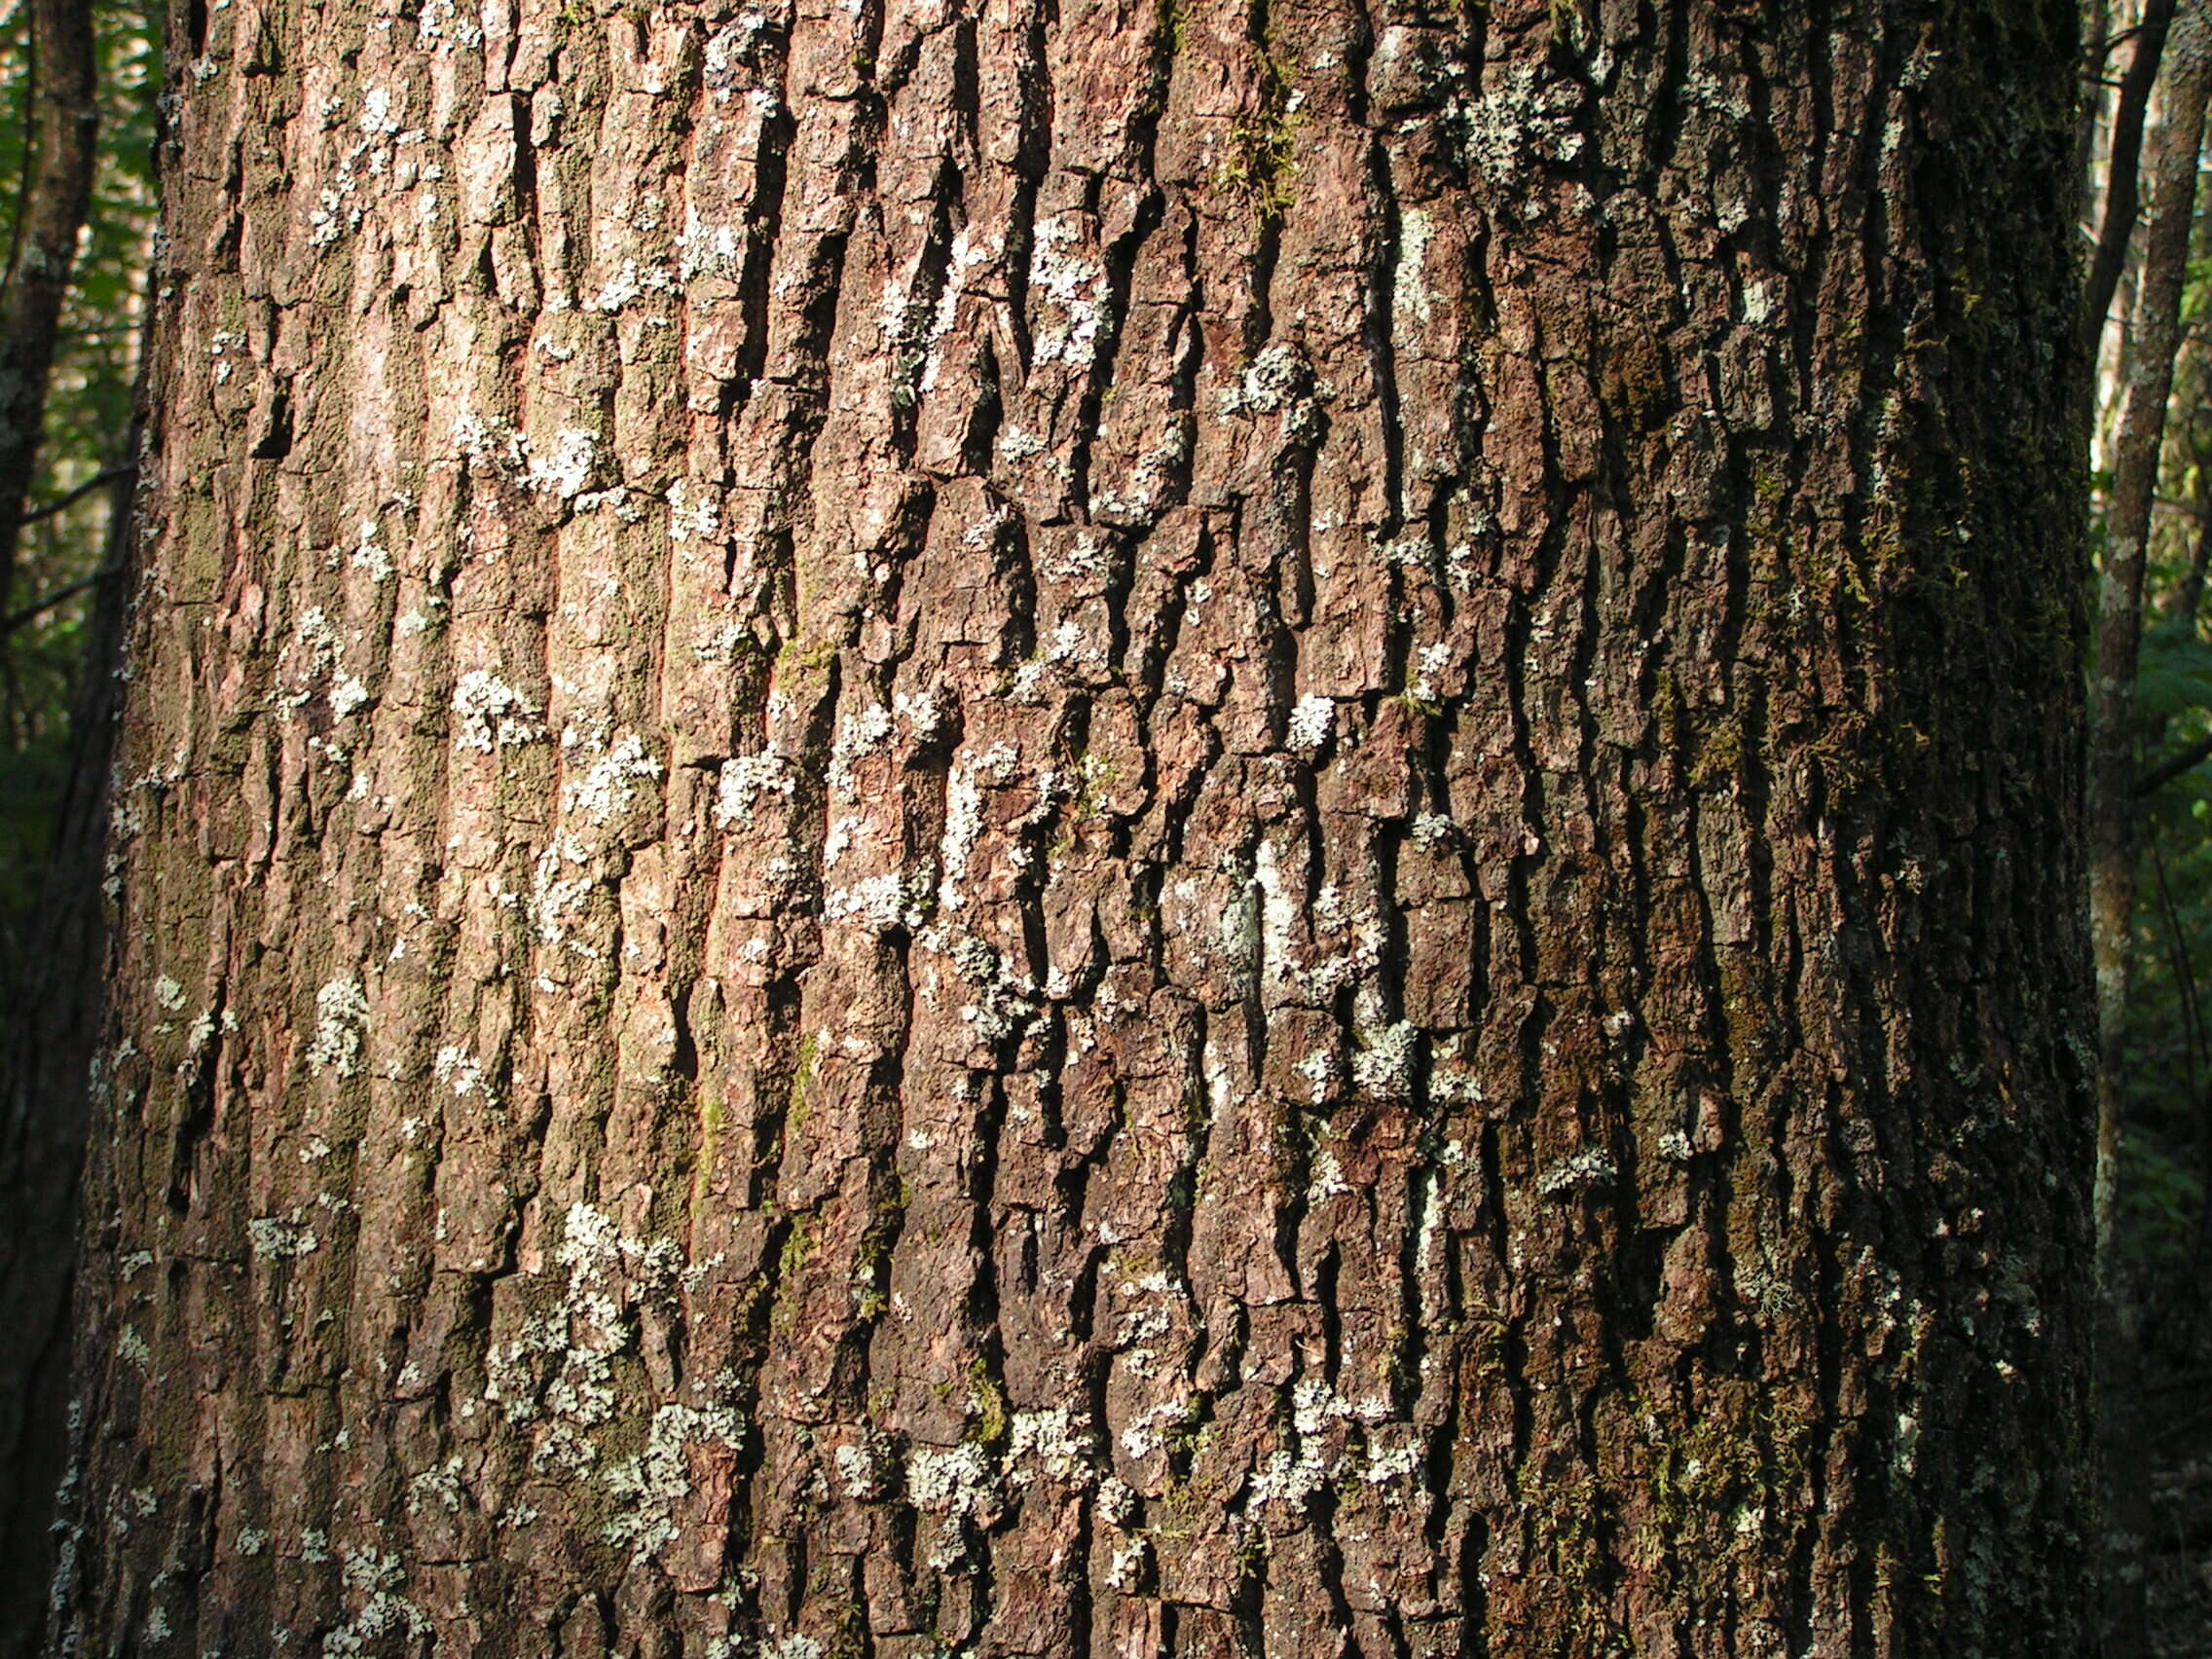 Image of oak